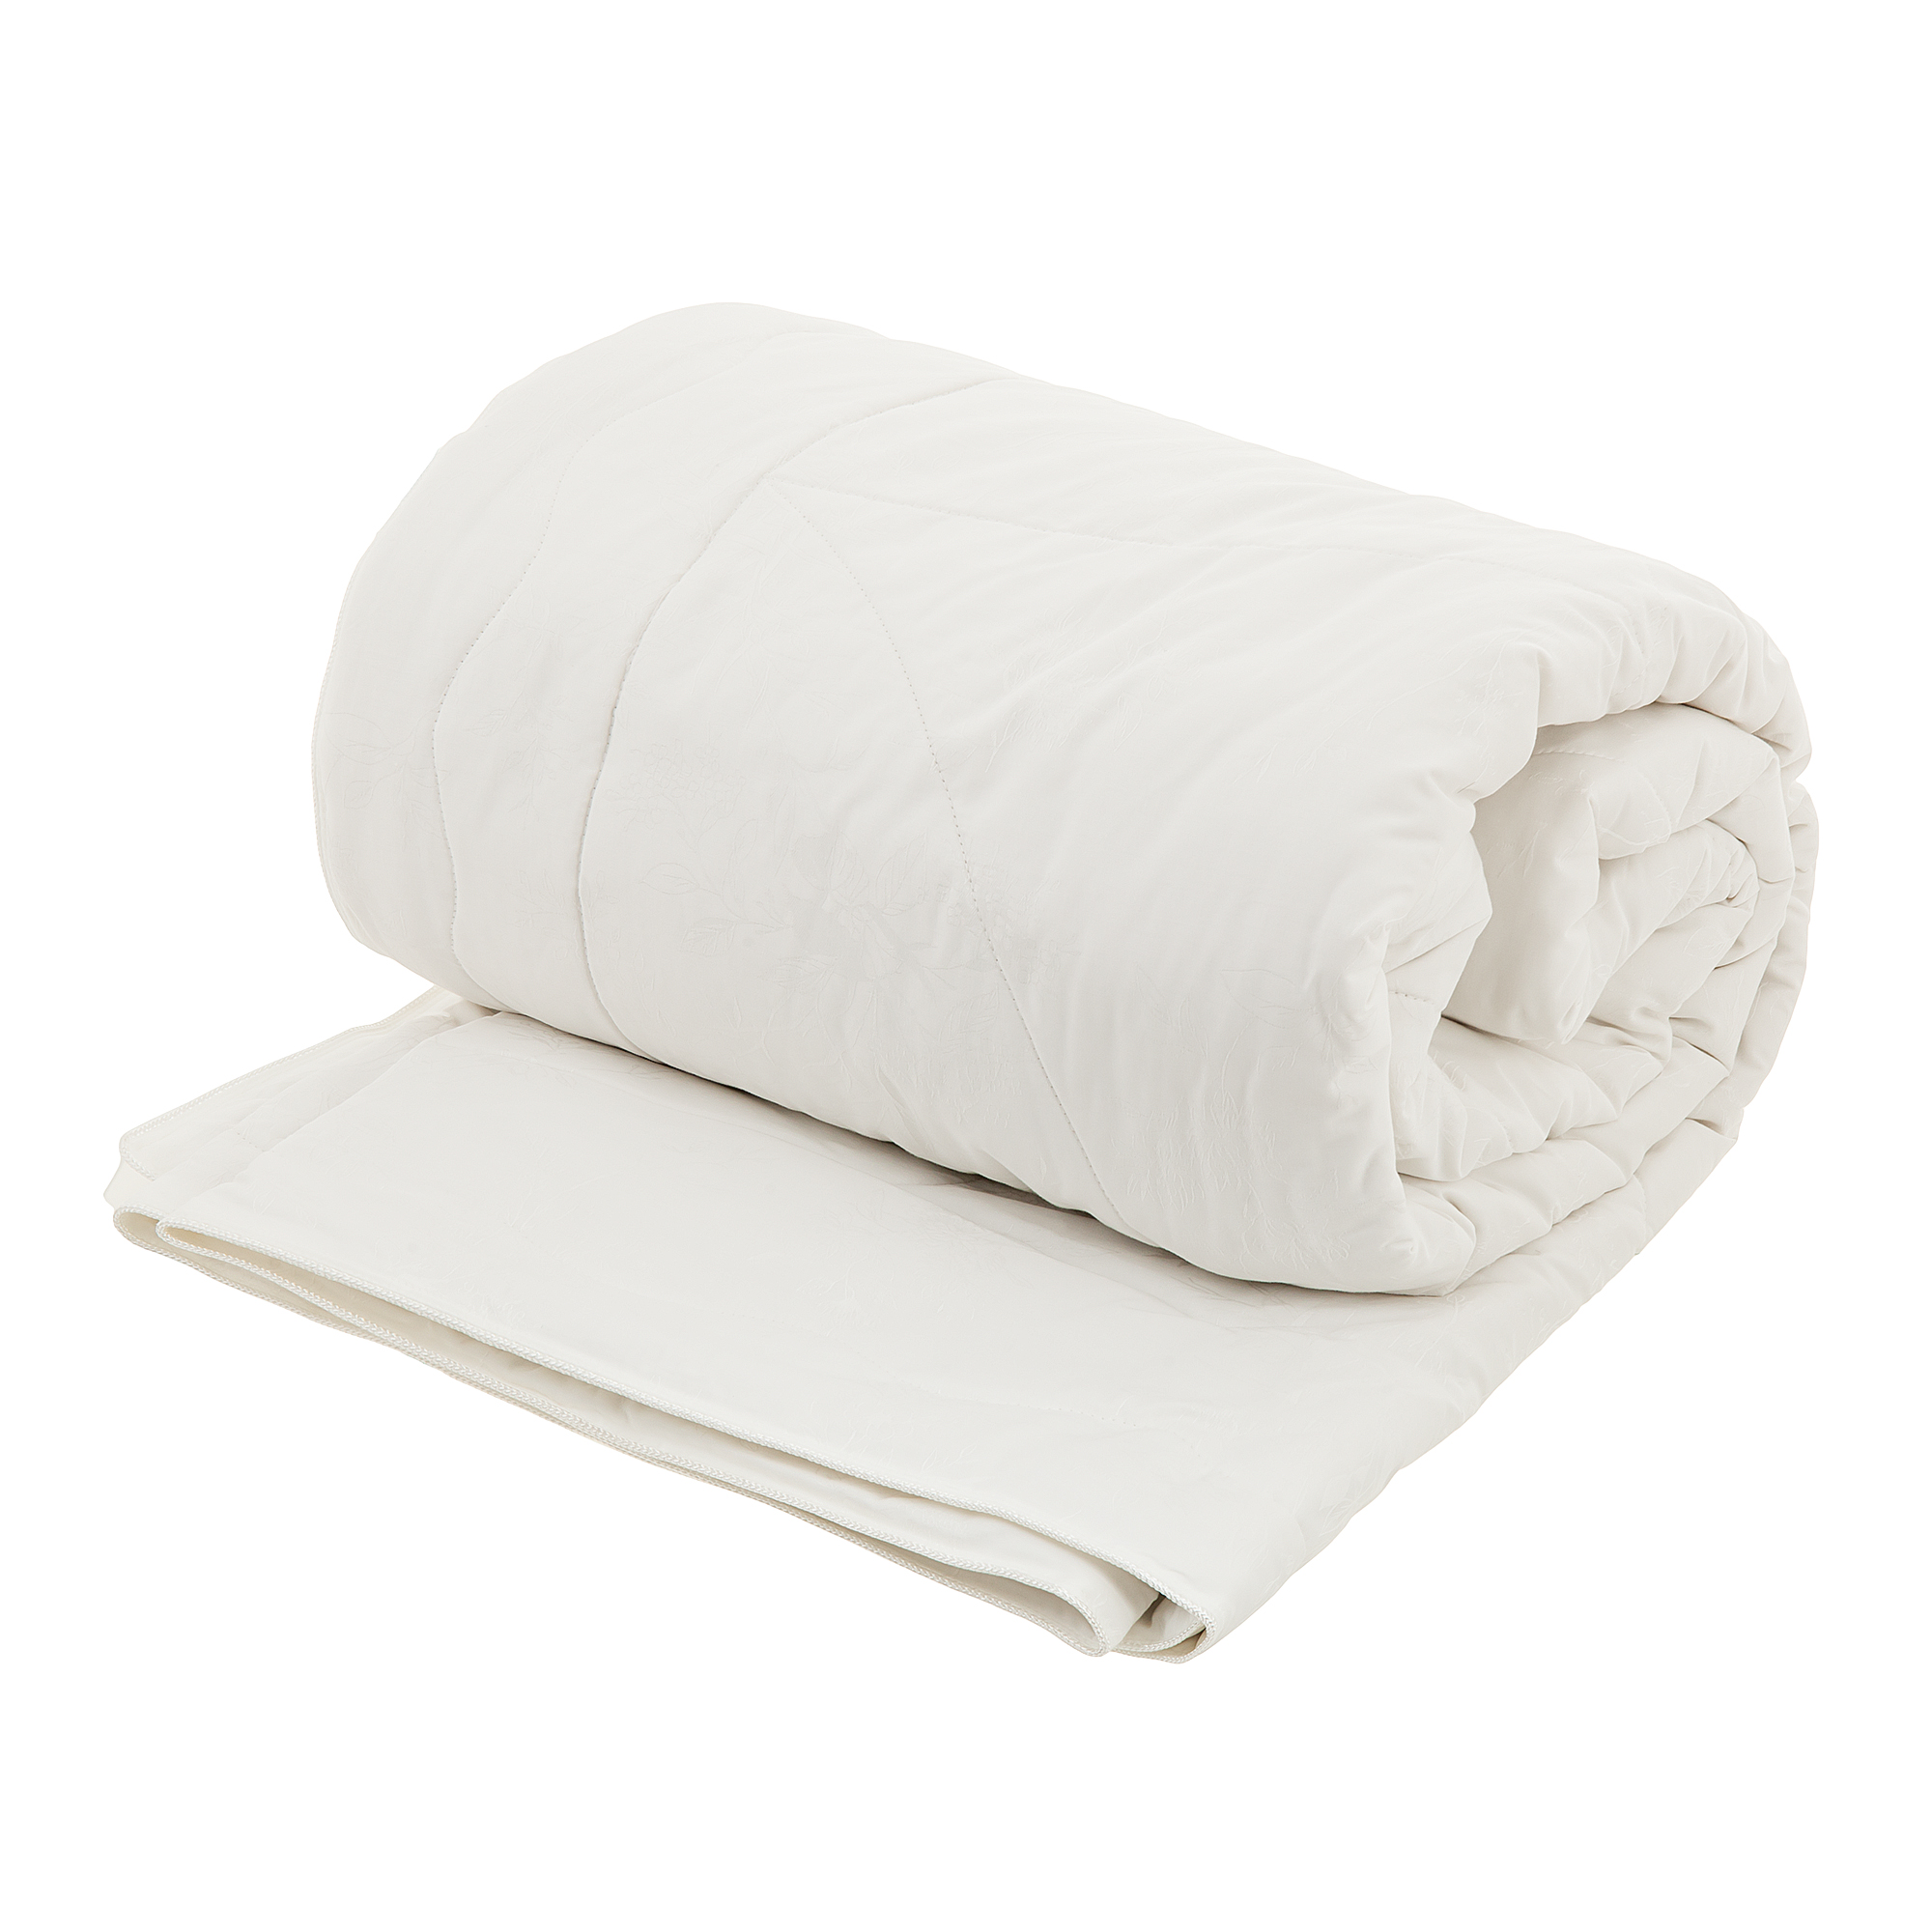 Одеяло Togas Лотос 200х210 см одеяло togas кайзер белое 200х210 см